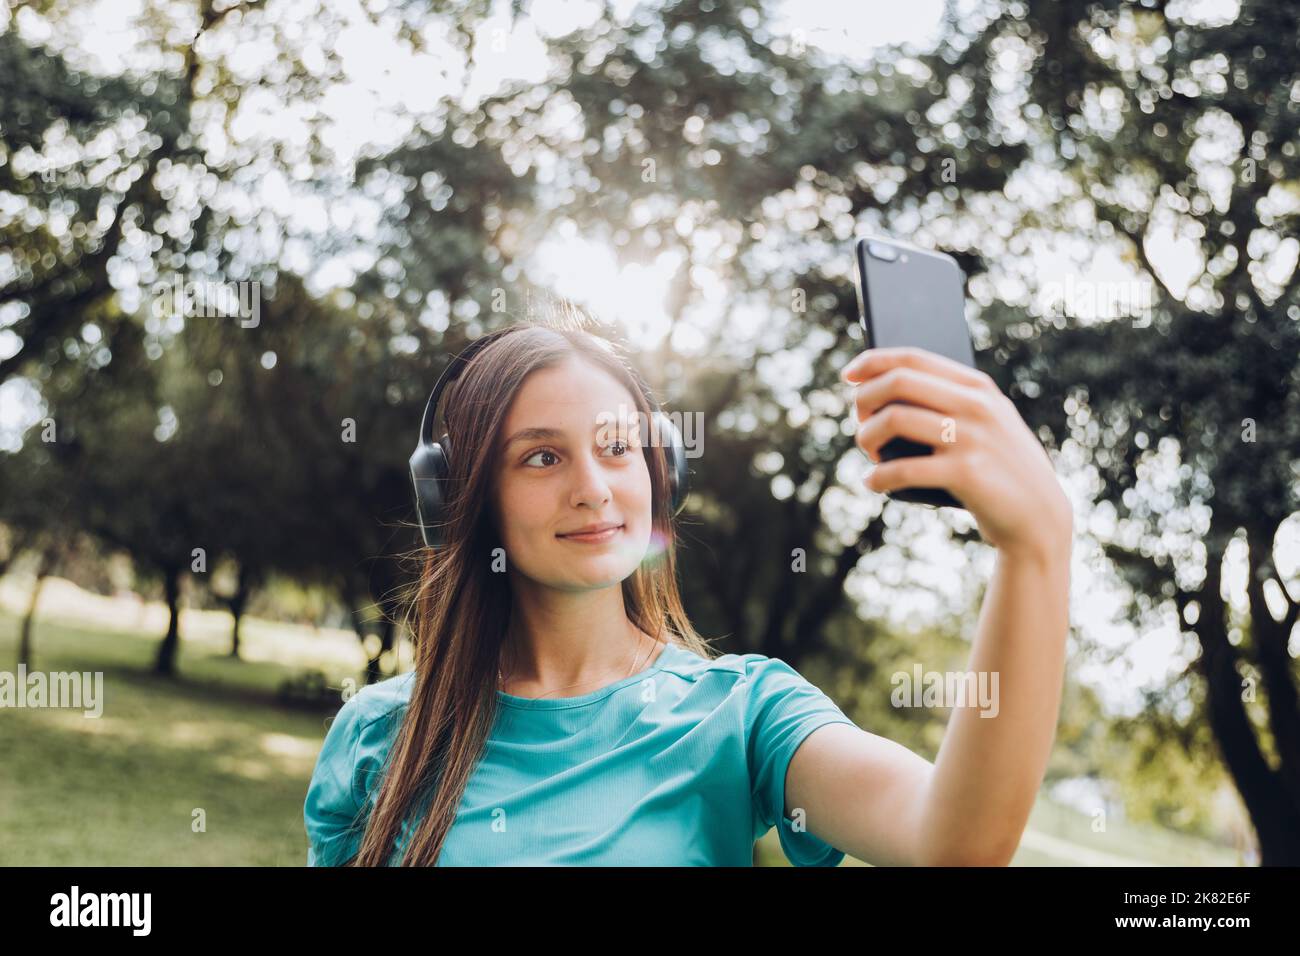 Lächelndes Mädchen im Teenageralter, das ein türkisfarbenes T-Shirt und Kopfhörer trägt und ein Selfie mit ihrem Handy in einem natürlichen Raum macht Stockfoto